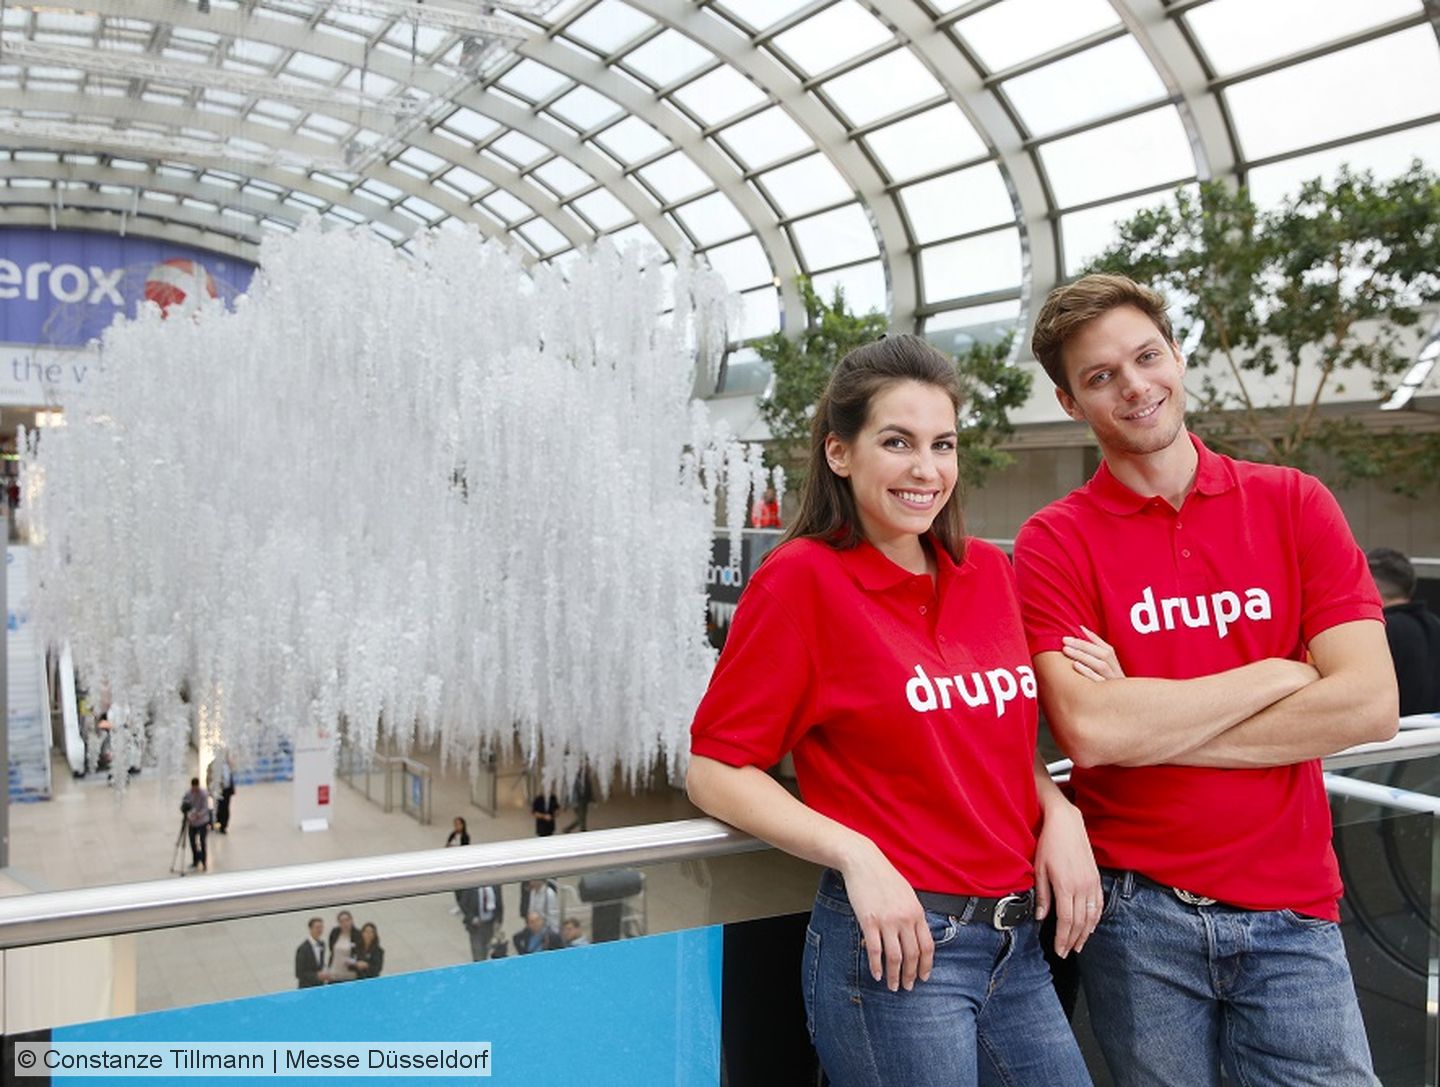 Messe Düsseldorf prepares drupa 2020 as planned